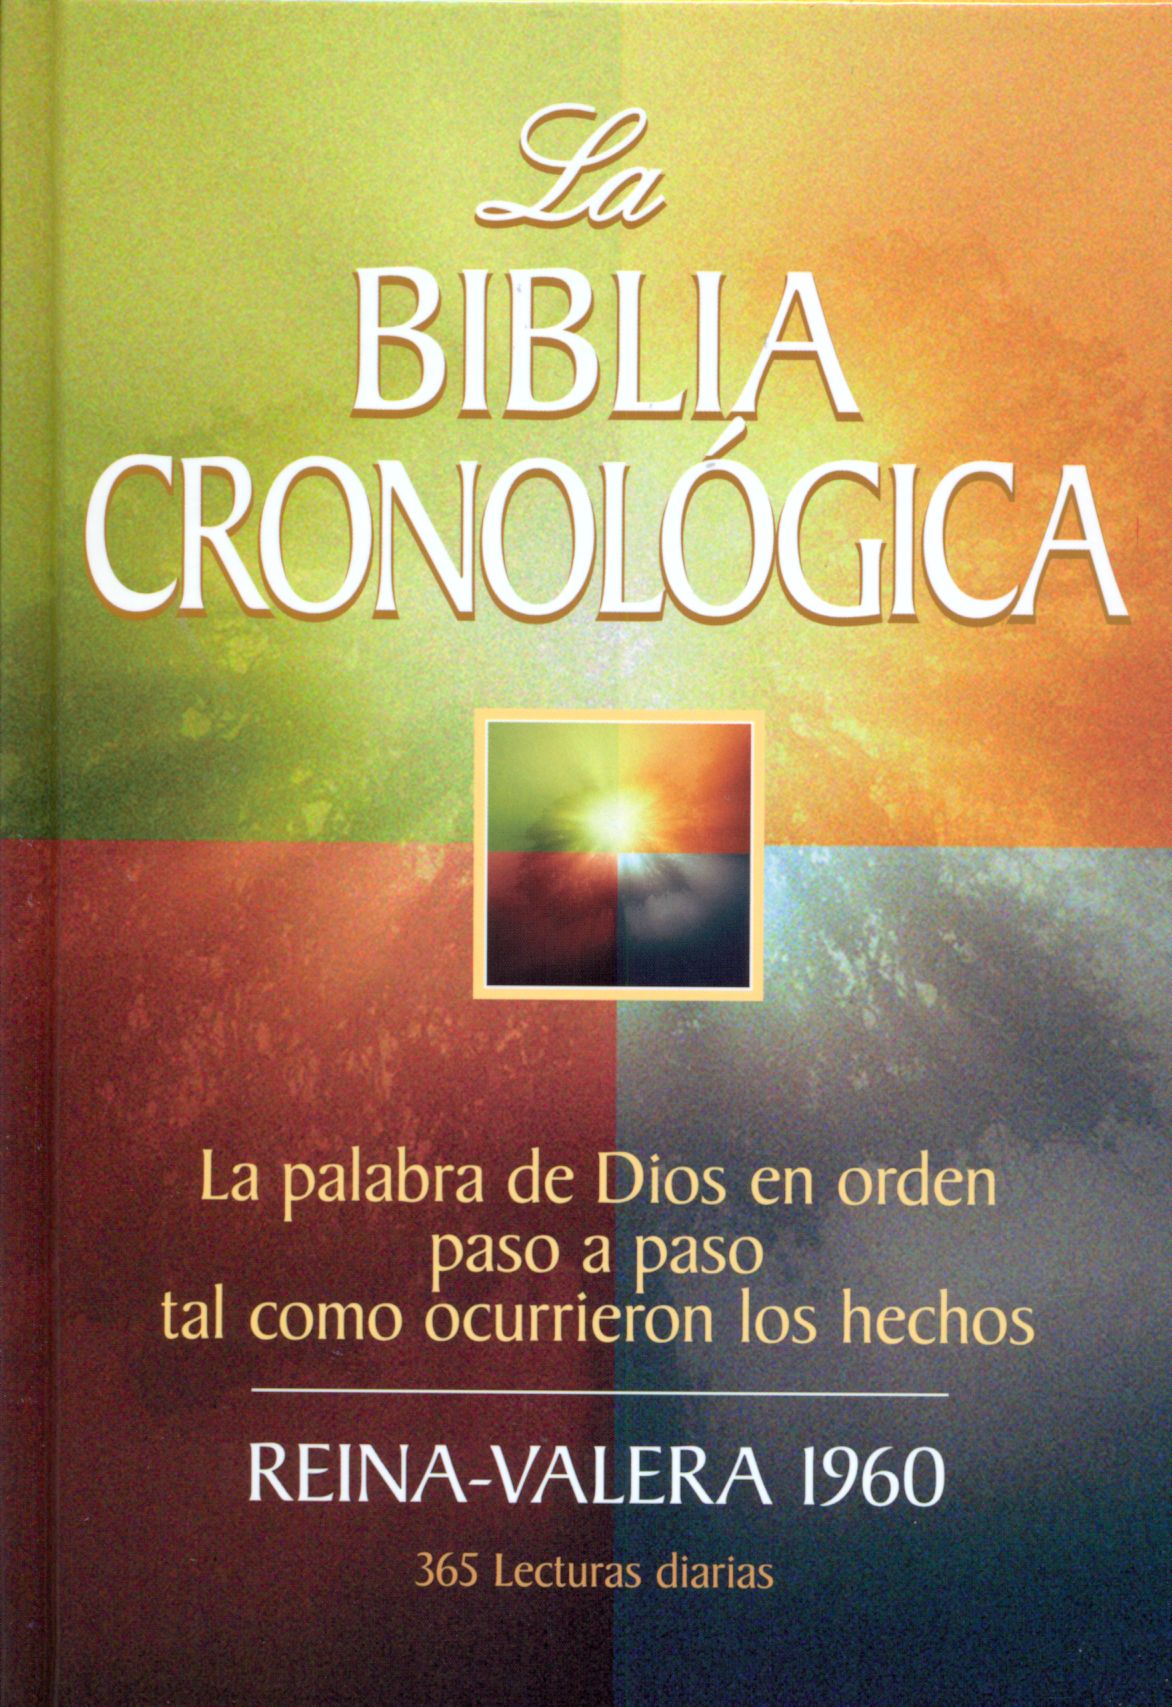 BIBLIA CRONOLÒGICA, BIBLE D'ETUDE , ESPAGNOL, RVR 1960,RIGIDE ILLUSTREE